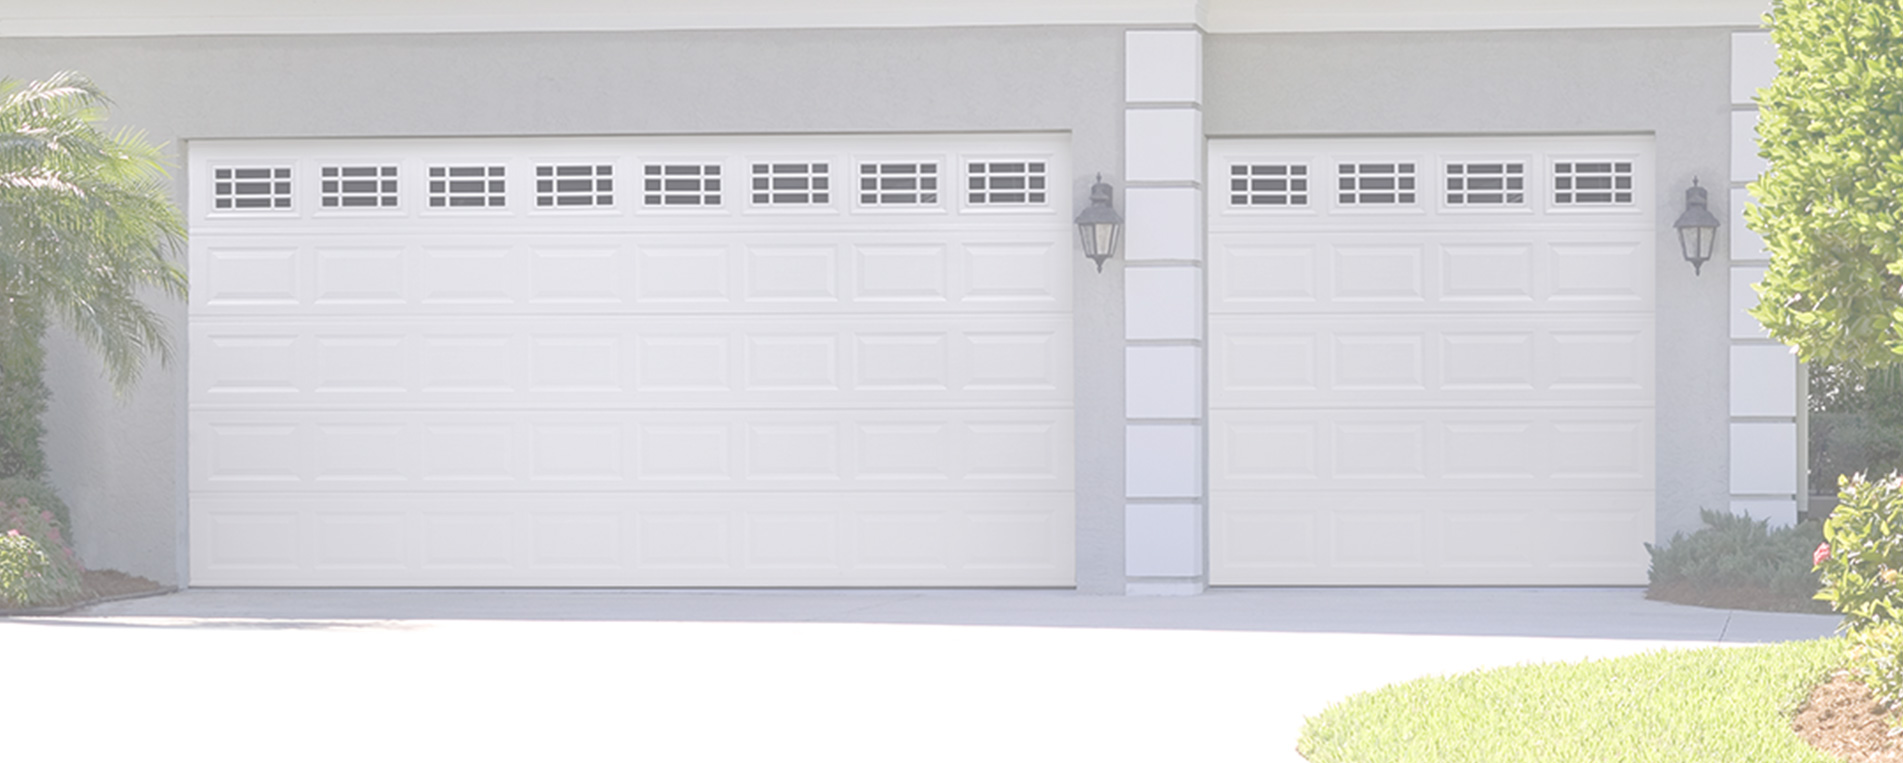 Repair Solutions For Garage Doors